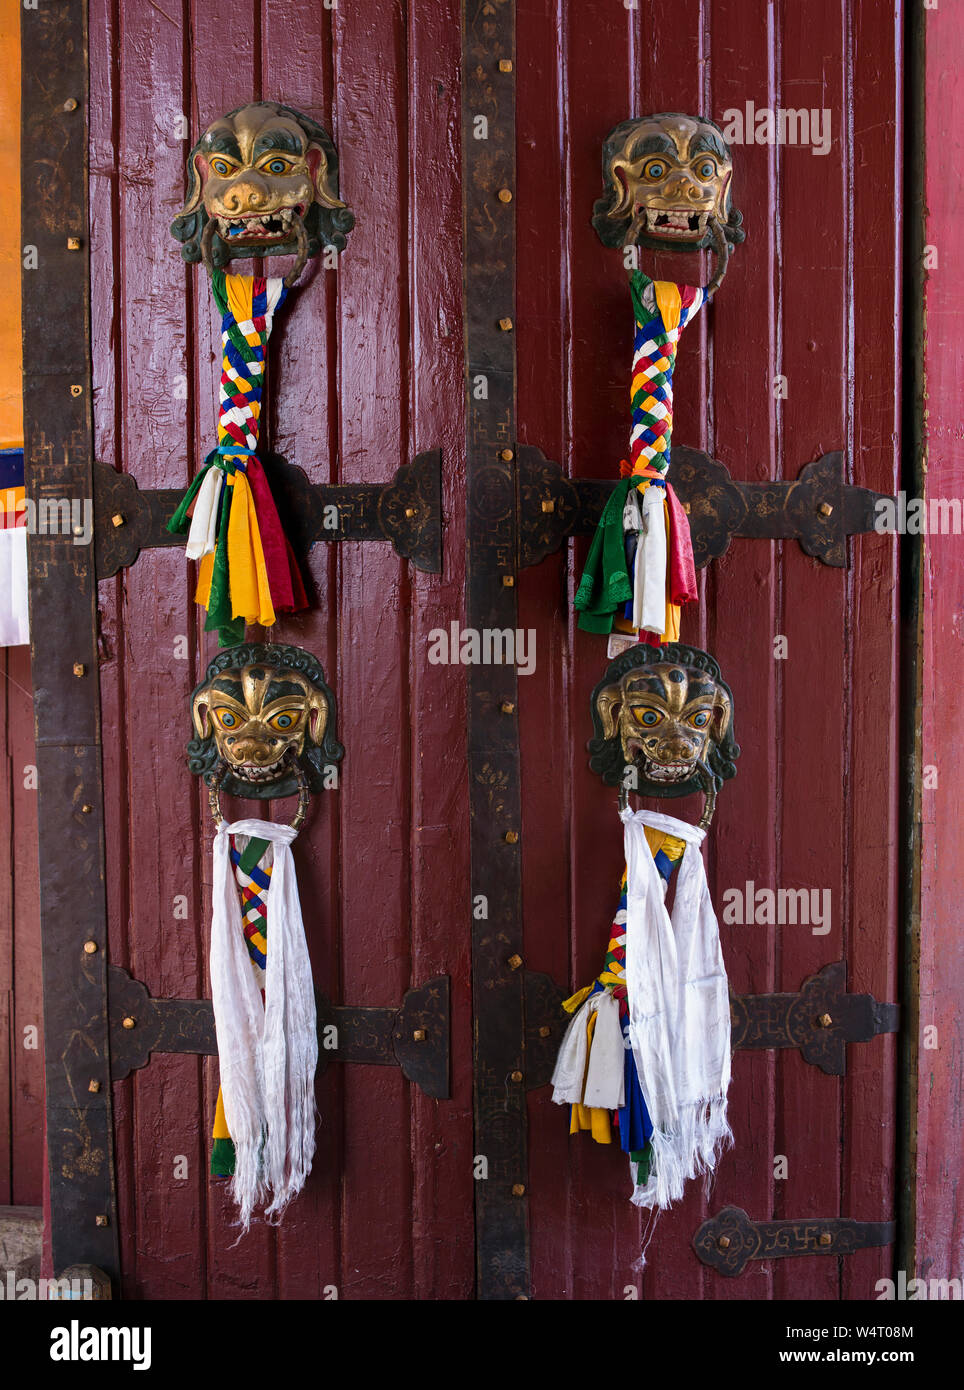 China, Tibet, Lhasa, Khatas oder tibetischen Gebets Schals und geflochtene Quasten an den Griffen an den Eingang des Norbulingka Palastes. Den Norbulingka Palast wurde der Sommerpalast des Dalai Lama von 1755 bis 1959. Es ist Teil des historischen Ensembles der Potala Palast ein UNESCO Weltkulturerbe. Stockfoto